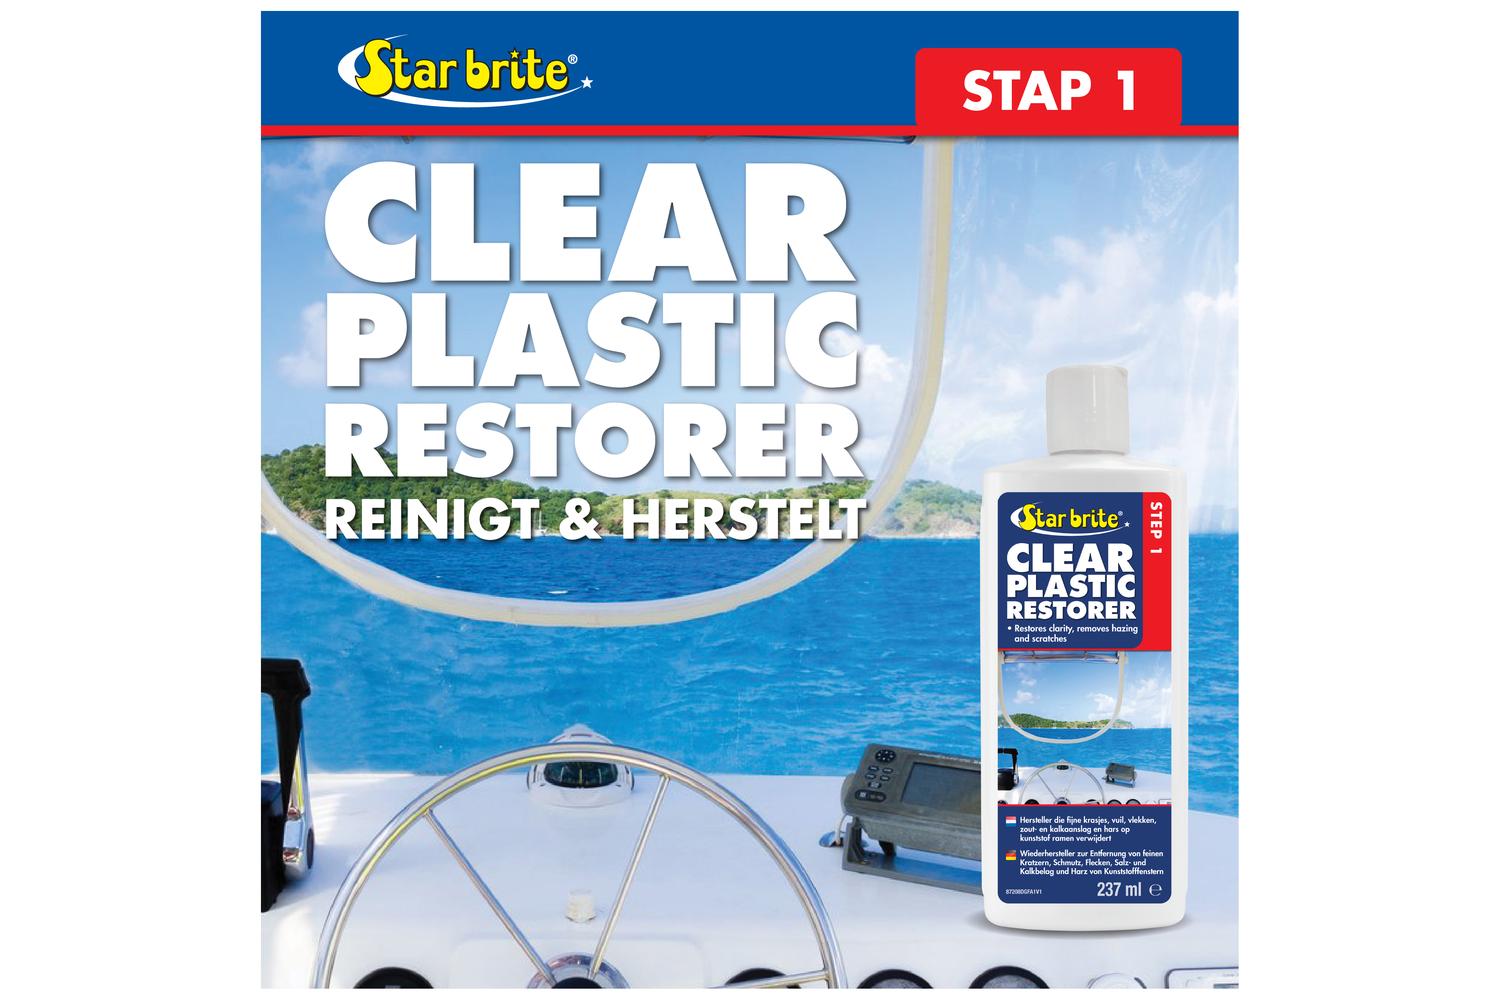 Starbrite Plastic Hersteller - Stap 1 237 ml